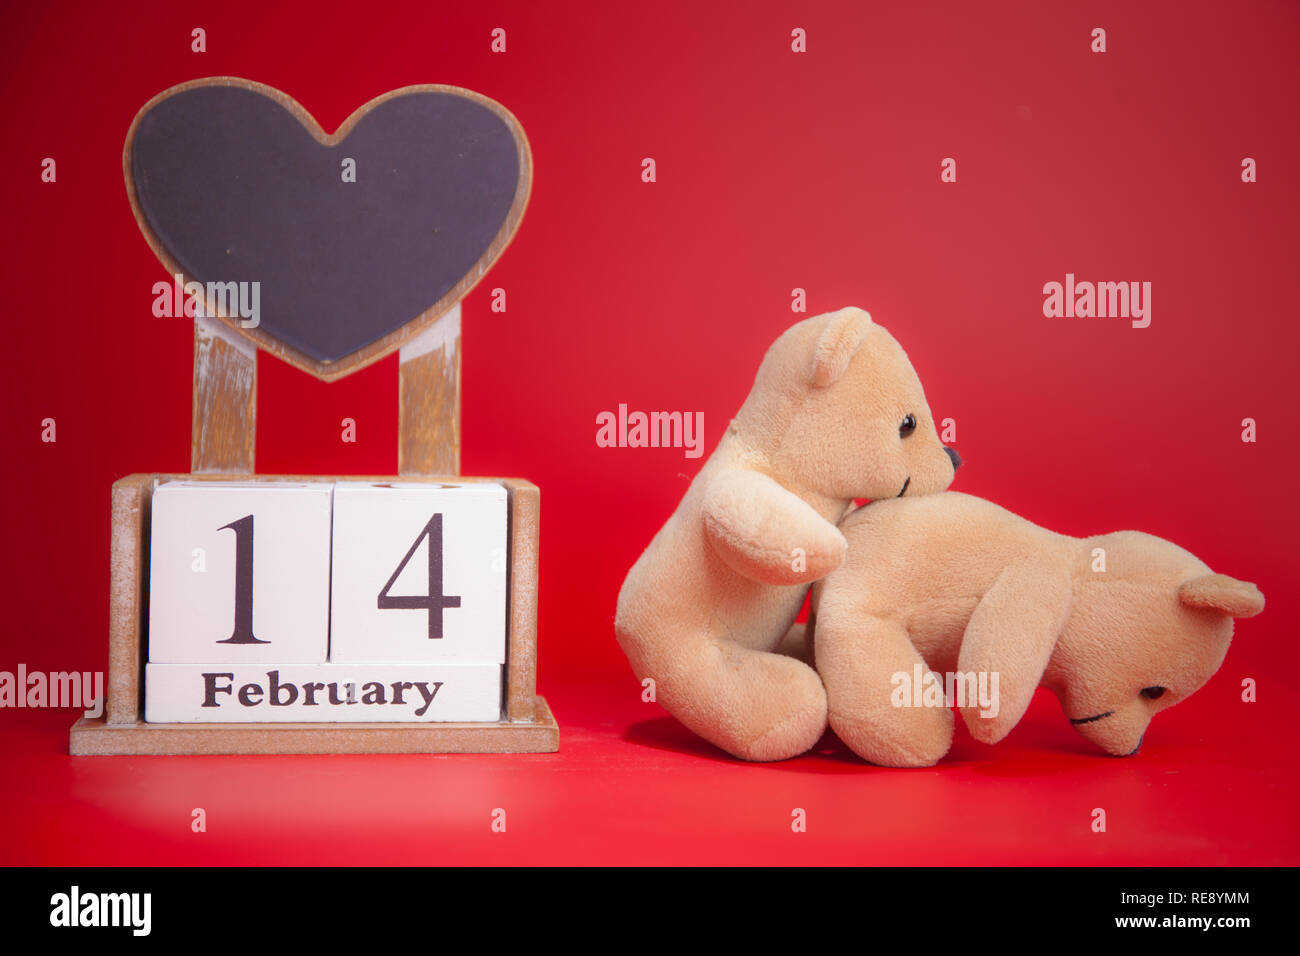 Me a voi orsacchiotto tenendo con amore cuore rosso isolato su sfondo  bianco - regalo ideale per San Valentino, giorno di San Valentino - me 2  voi teddy Foto stock - Alamy